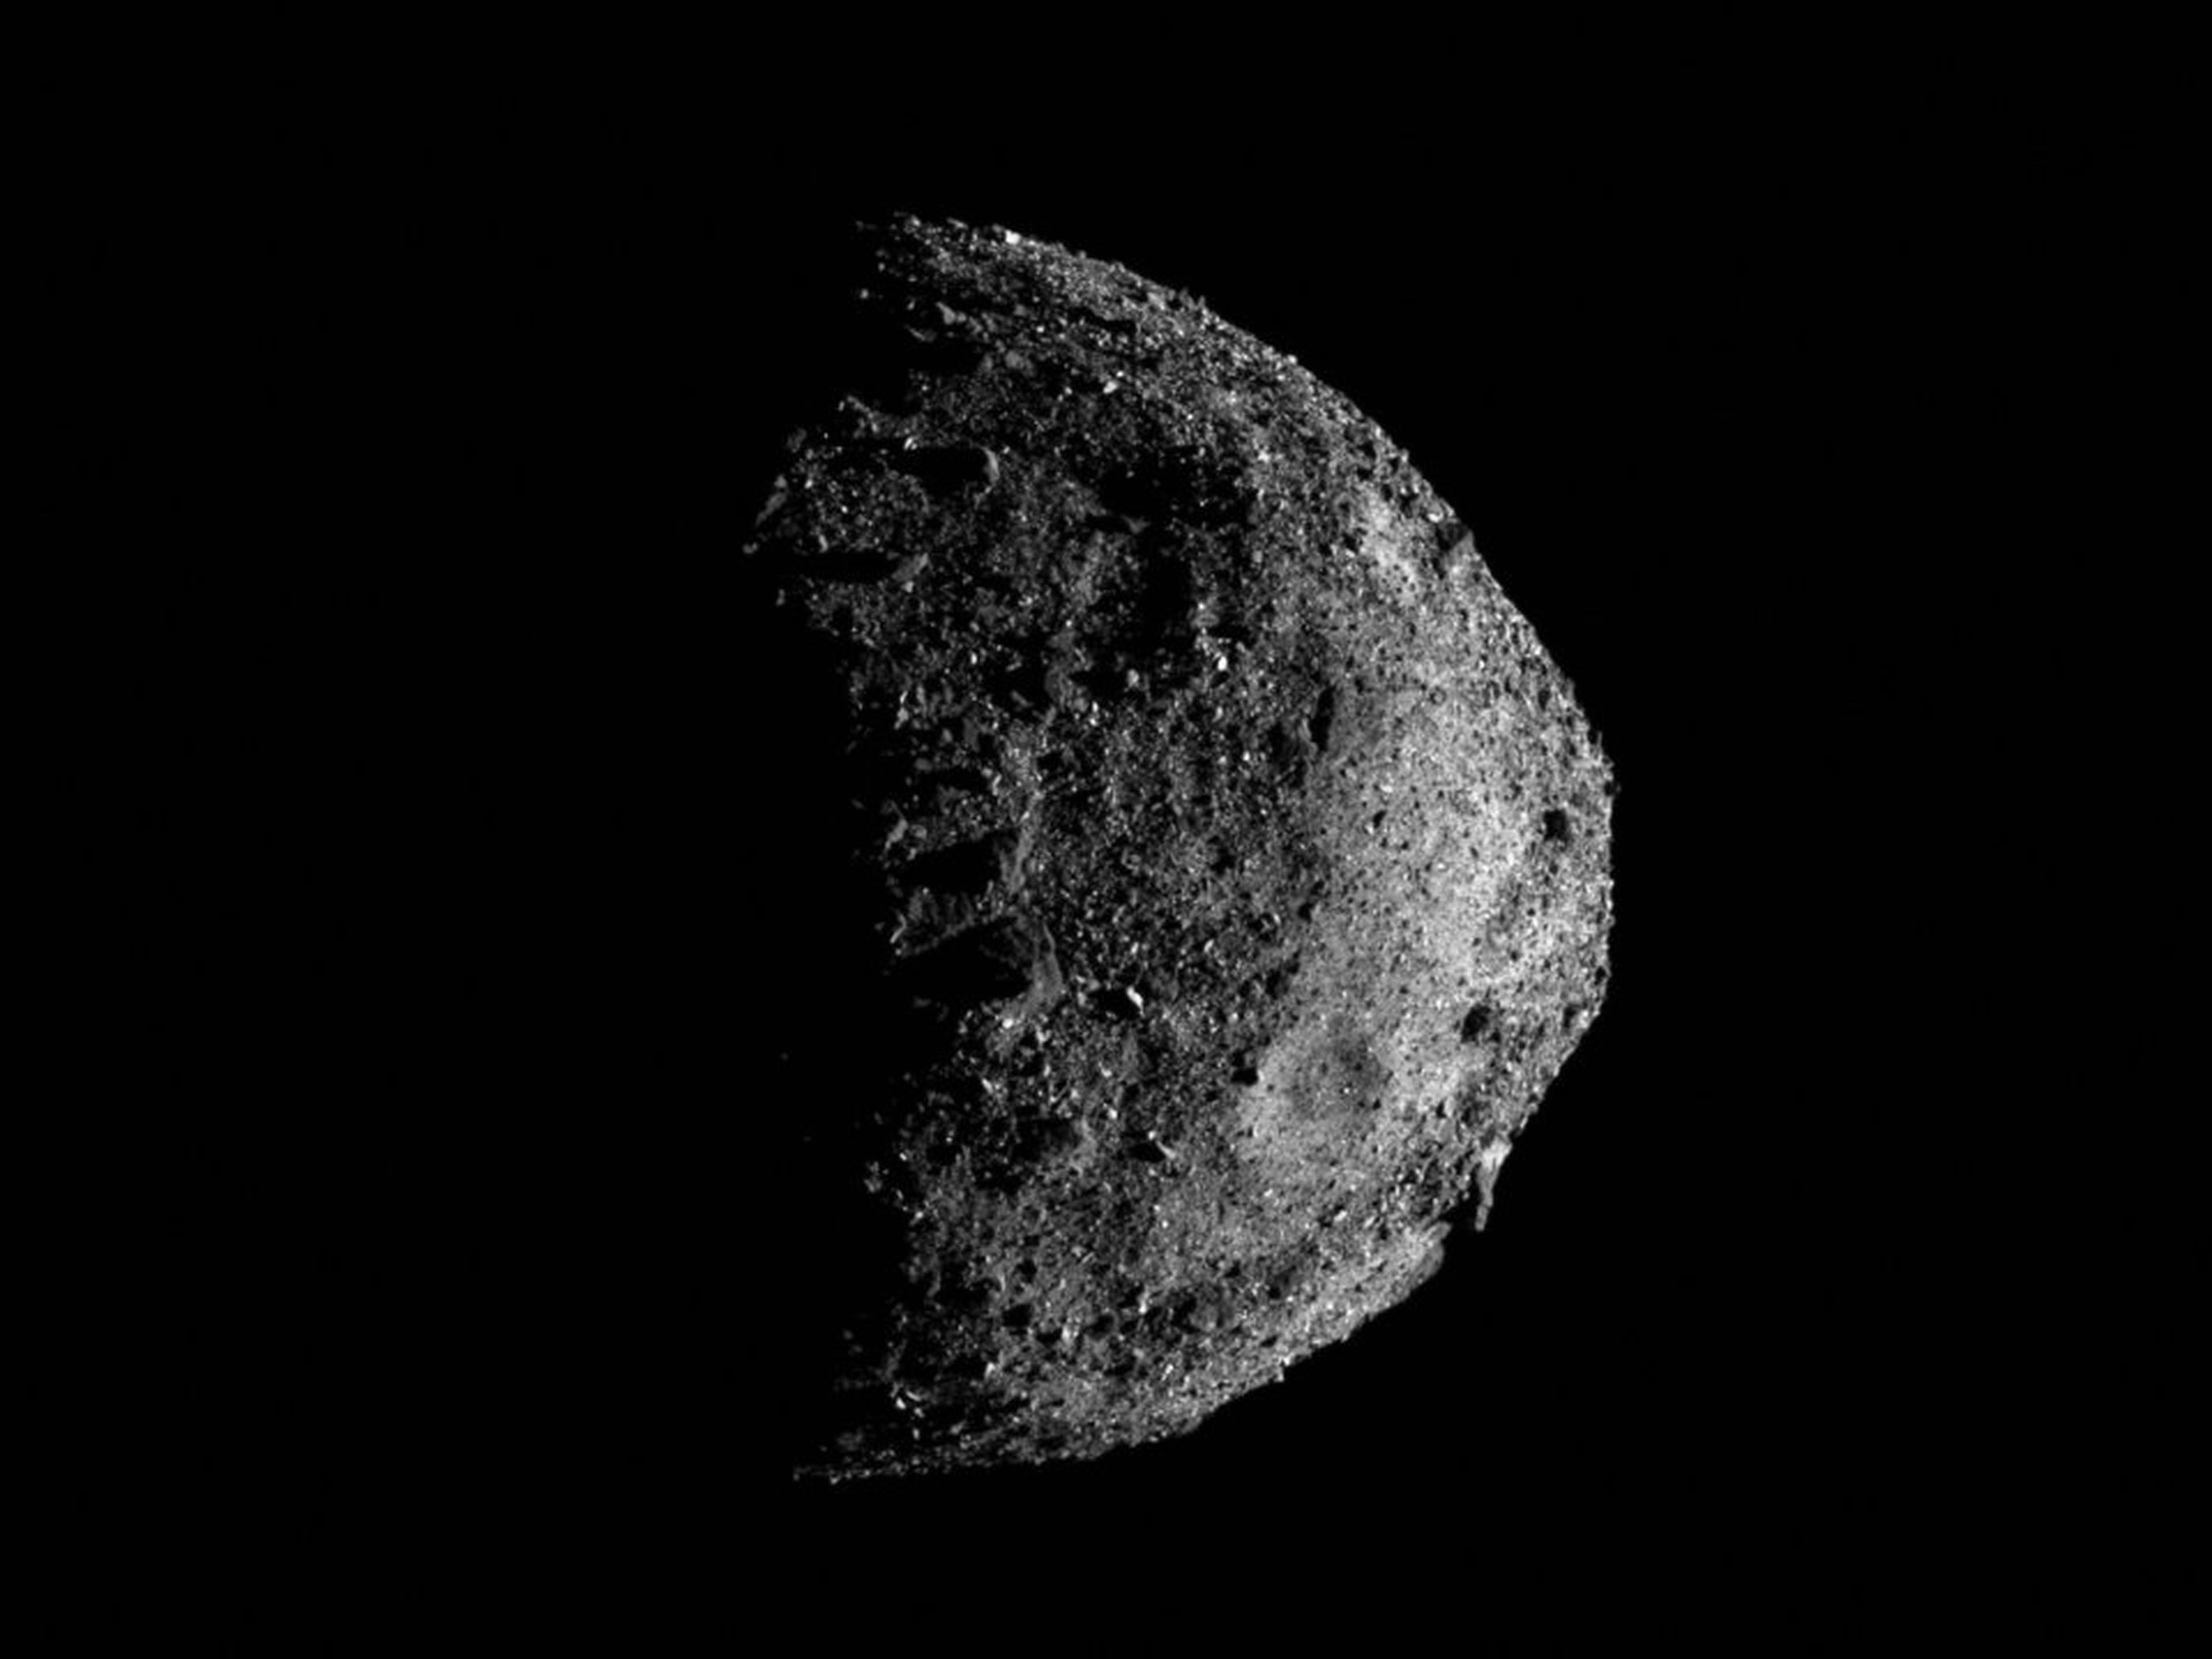 El asteroide Bennu en una imagen capturada por el generador de imágenes MapCam de OSIRIS-REx, el pasado 17 de diciembre.